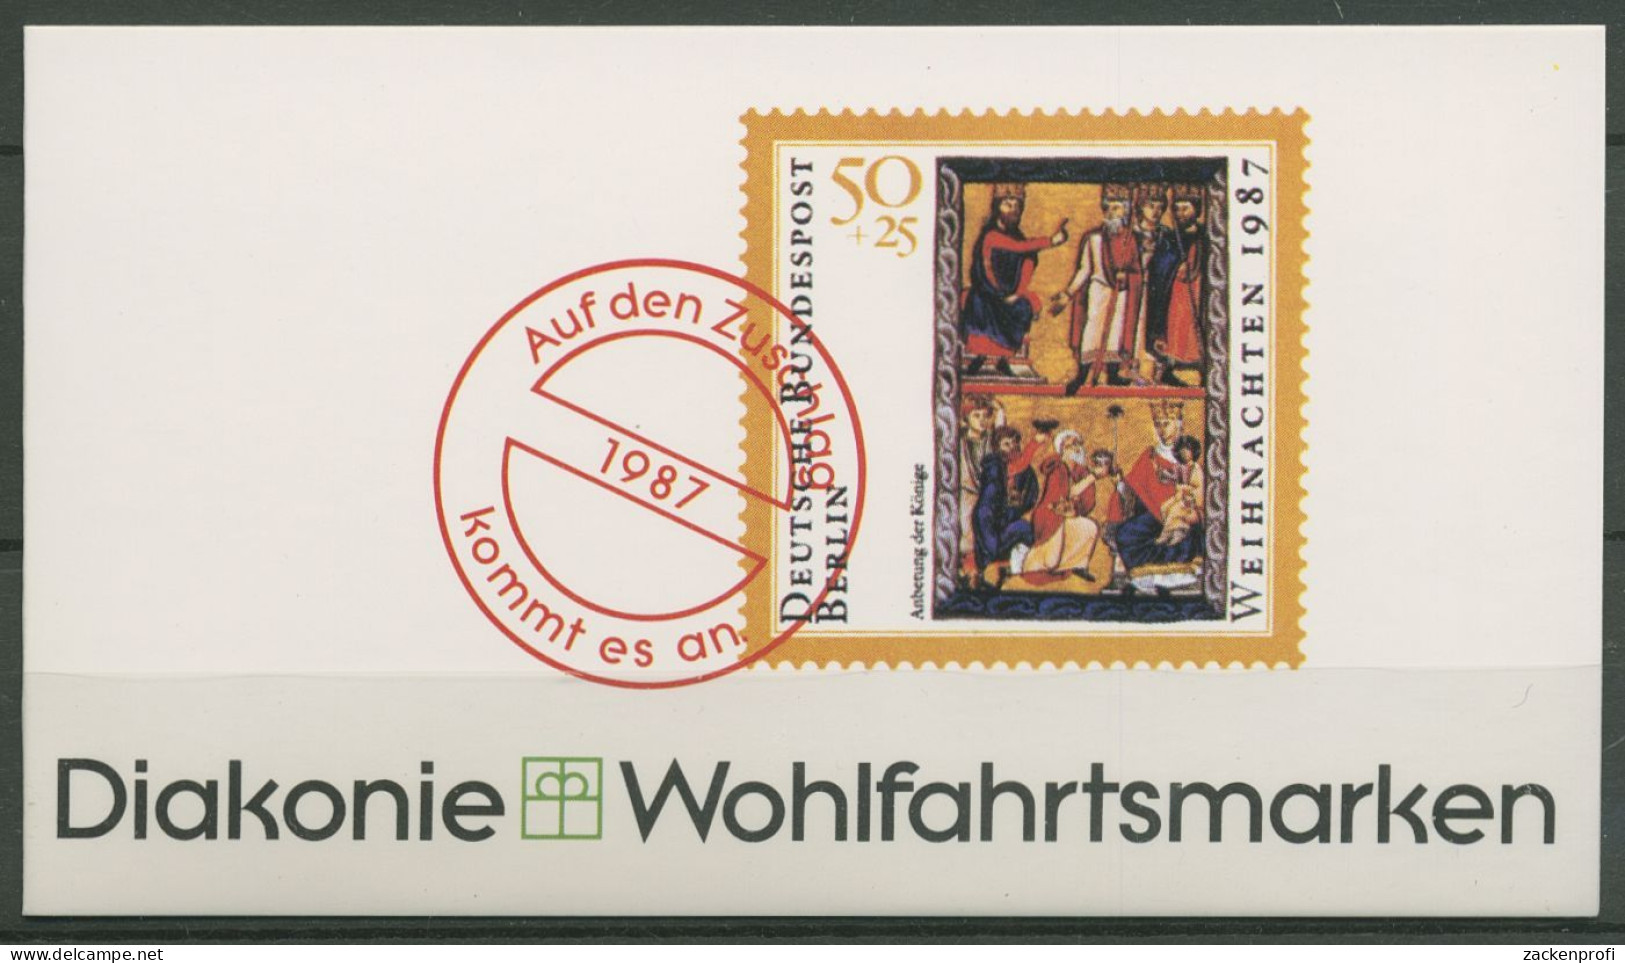 Berlin Diakonie 1987 Weihnachten Markenheftchen (797) MH W 4 Postfrisch (C60280) - Booklets